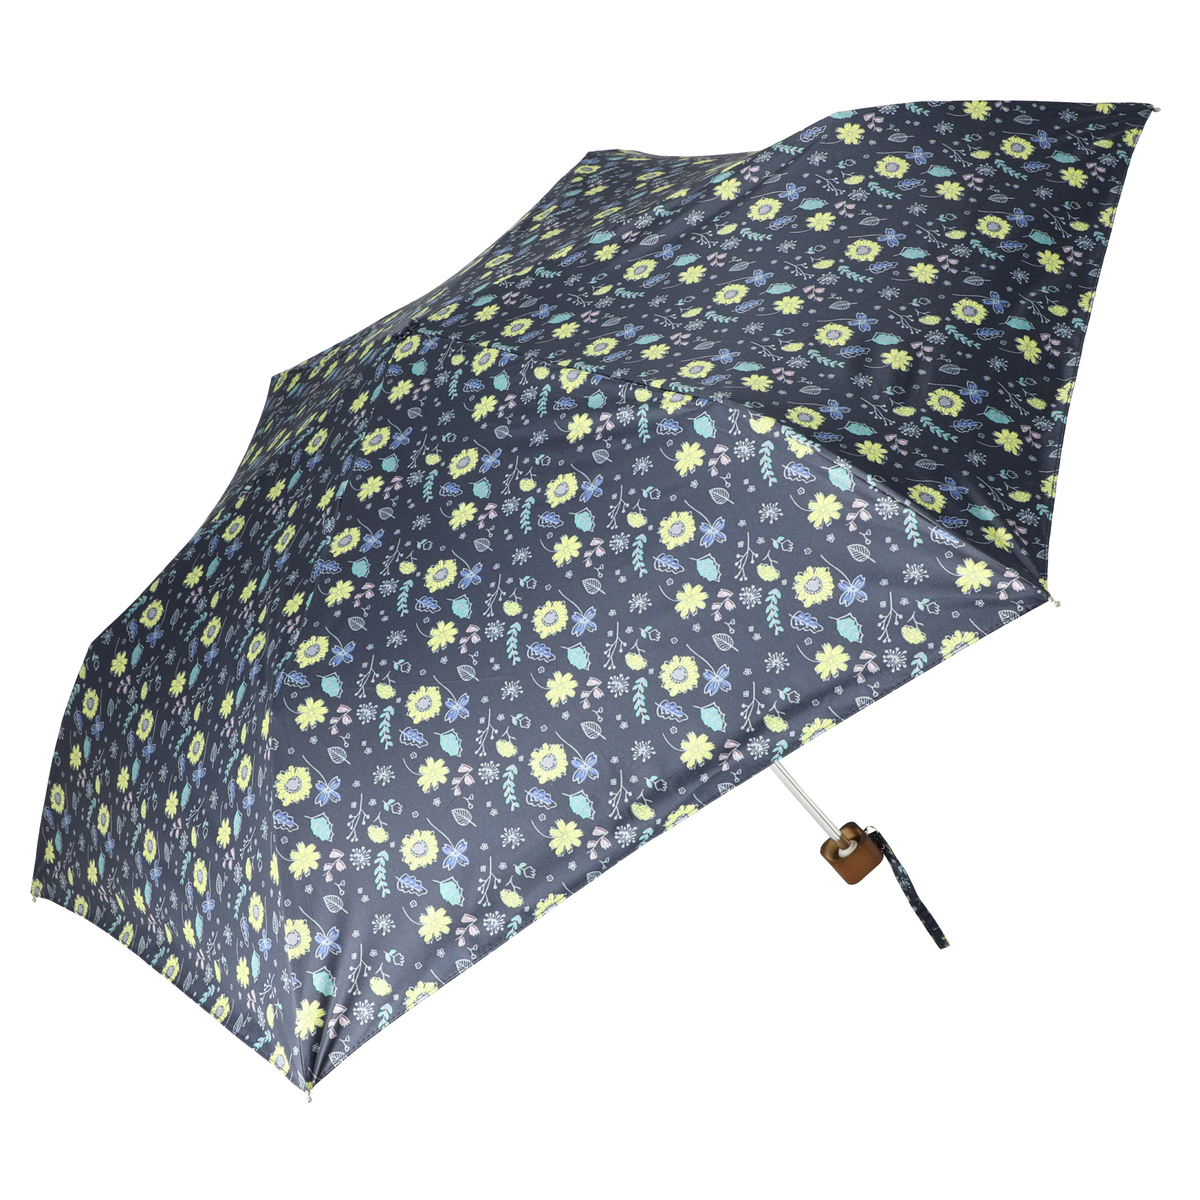  ルナジュメール UV+1級遮光+晴雨兼用 プリント 折傘  小花柄ネイビー